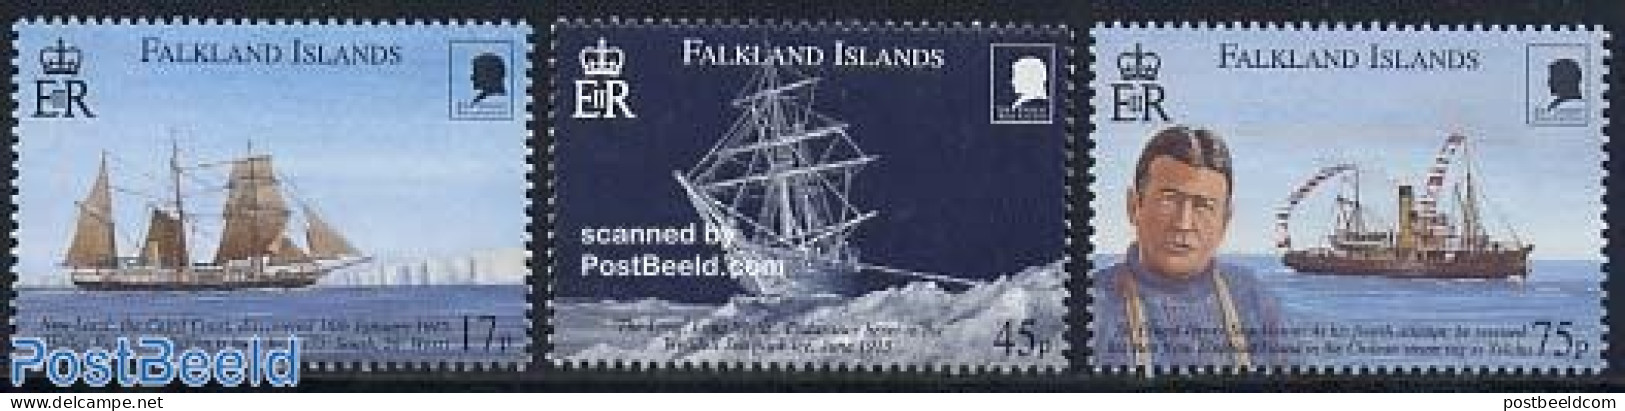 Falkland Islands 2000 Sir Ernest Shackleton 3v, Mint NH, History - Science - Transport - Explorers - The Arctic & Anta.. - Erforscher